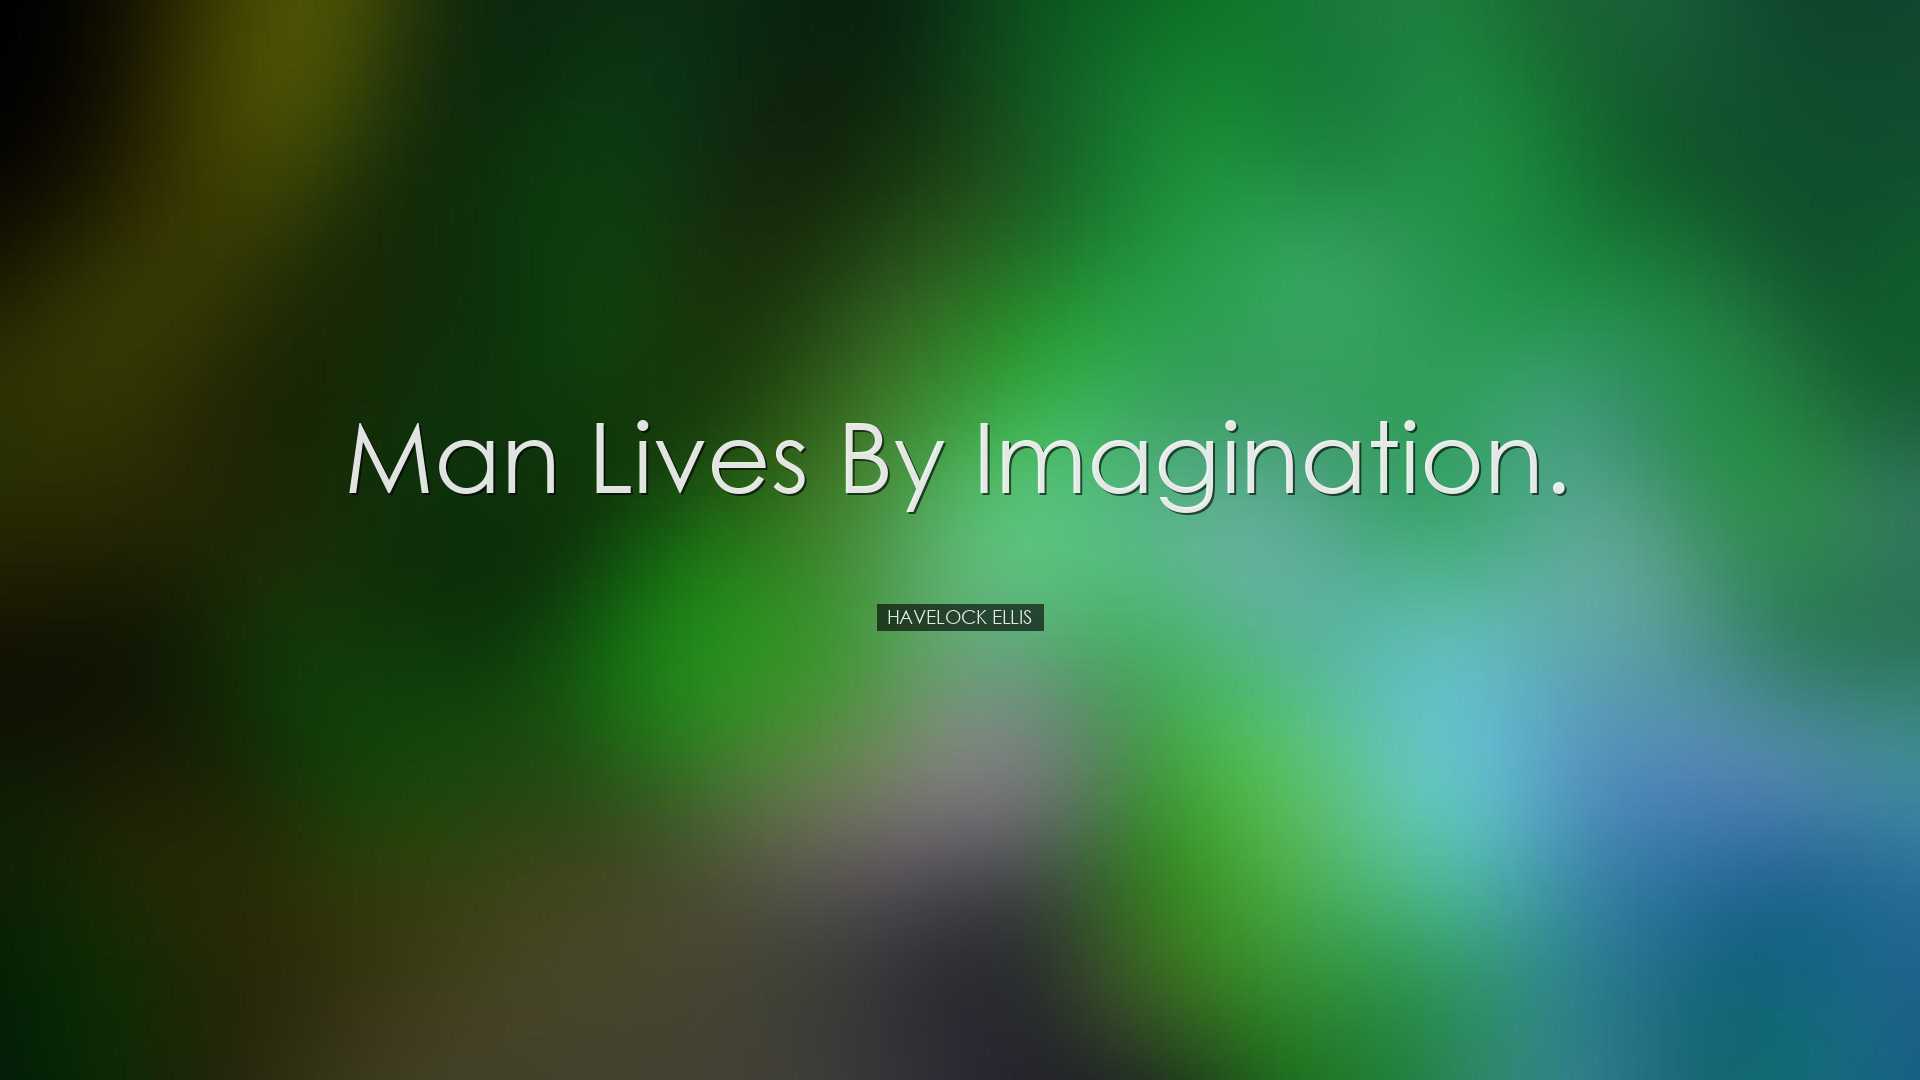 Man lives by imagination. - Havelock Ellis